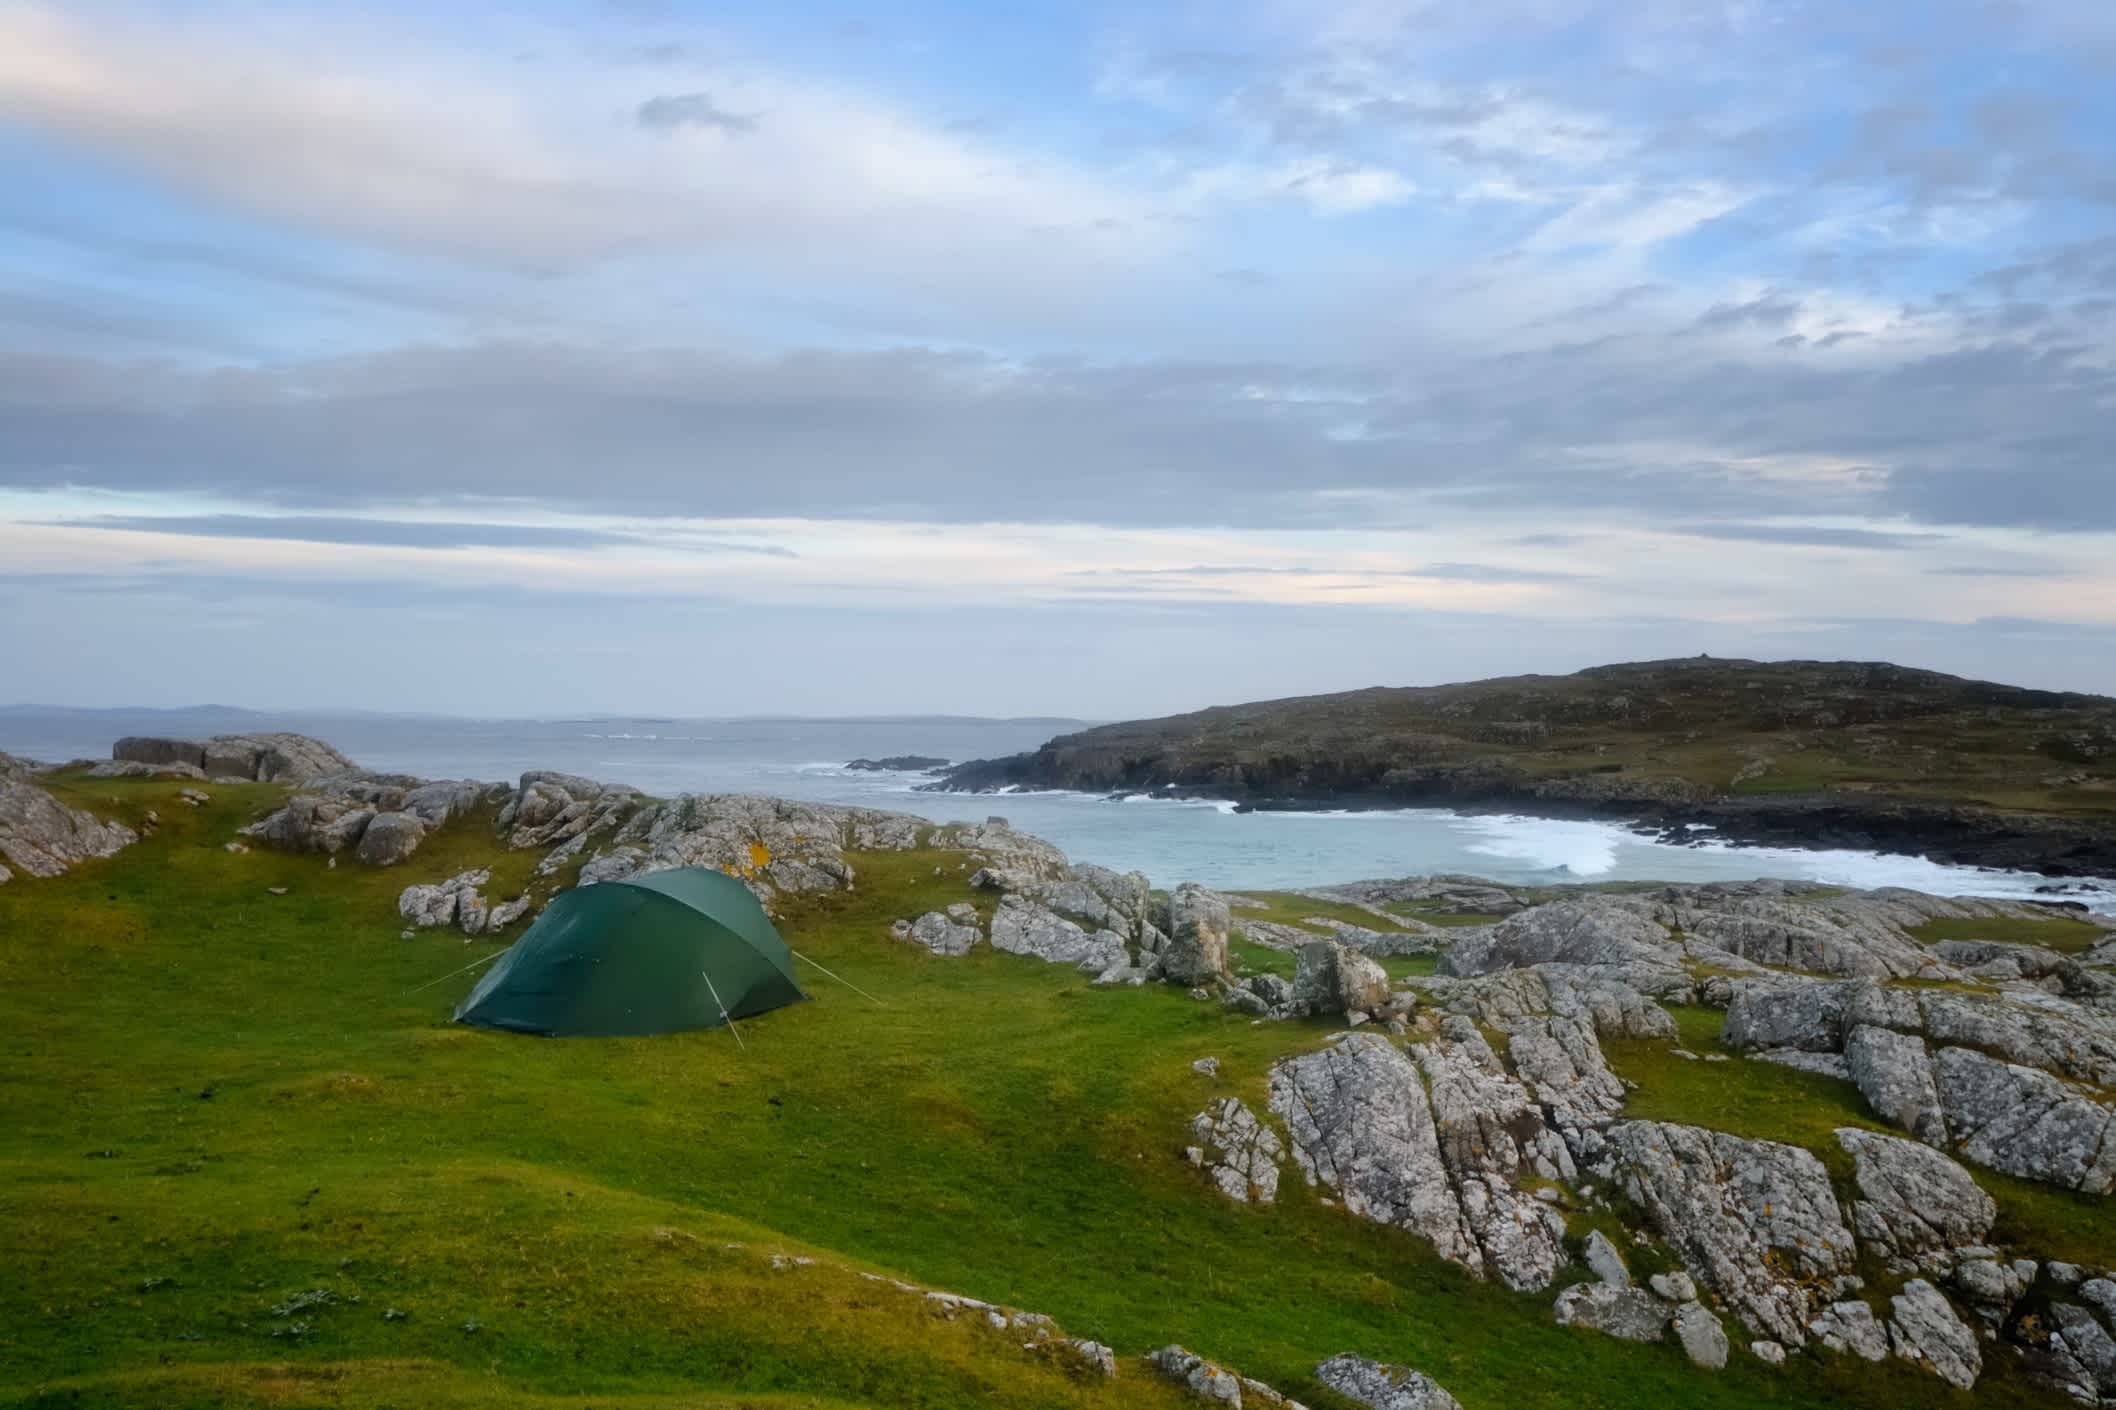 Camping in der Wildnis an der irischen Küste in der Region Galway.
